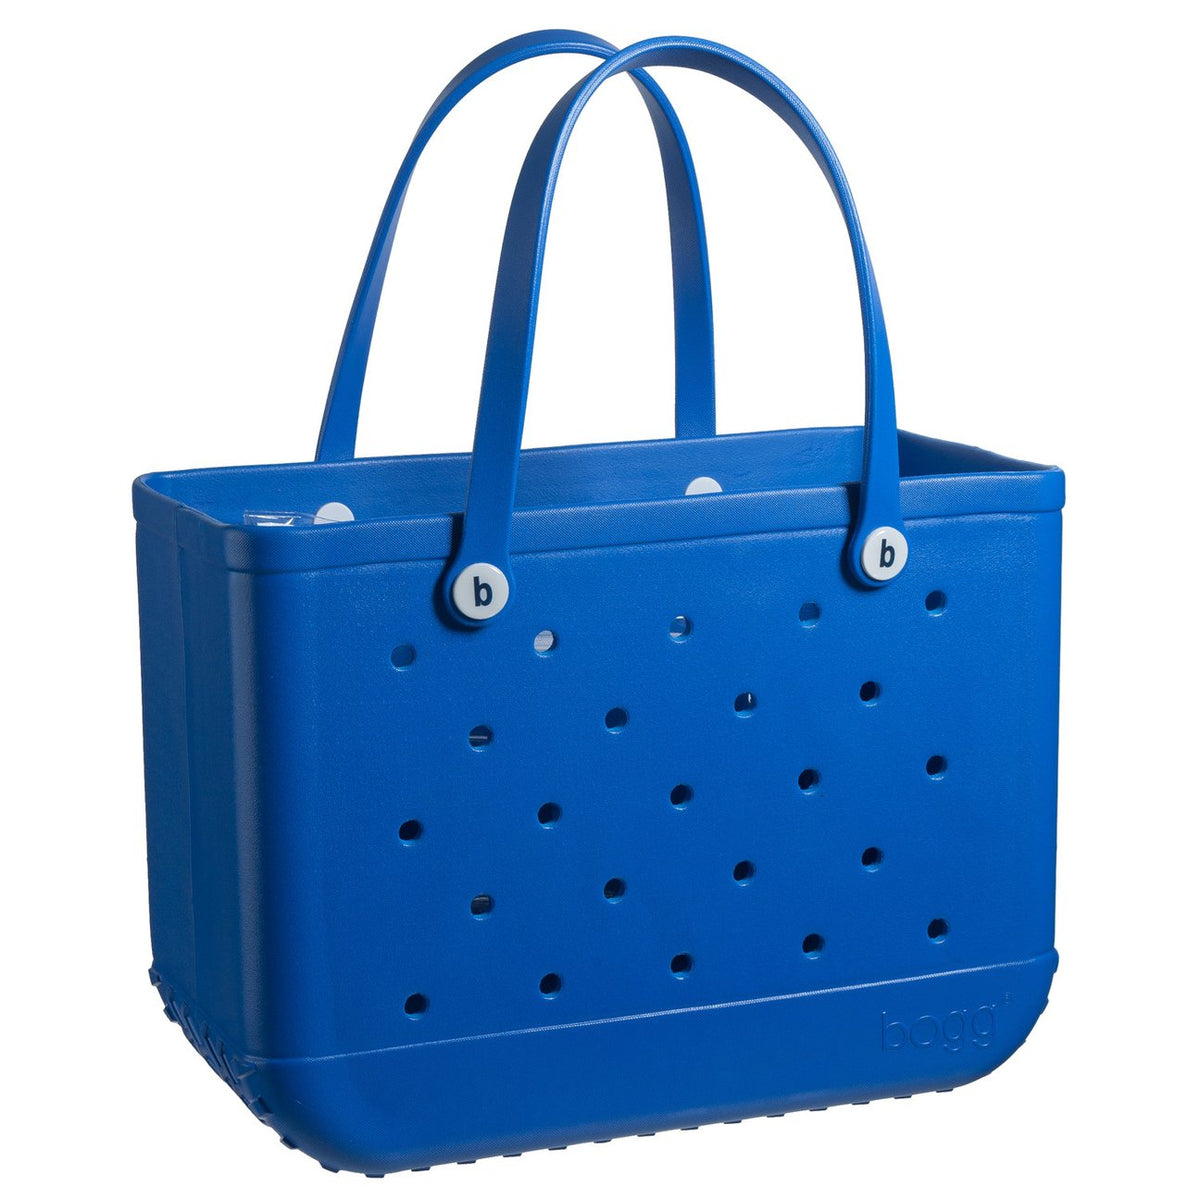 Bogg Bag, Tiffany Blue